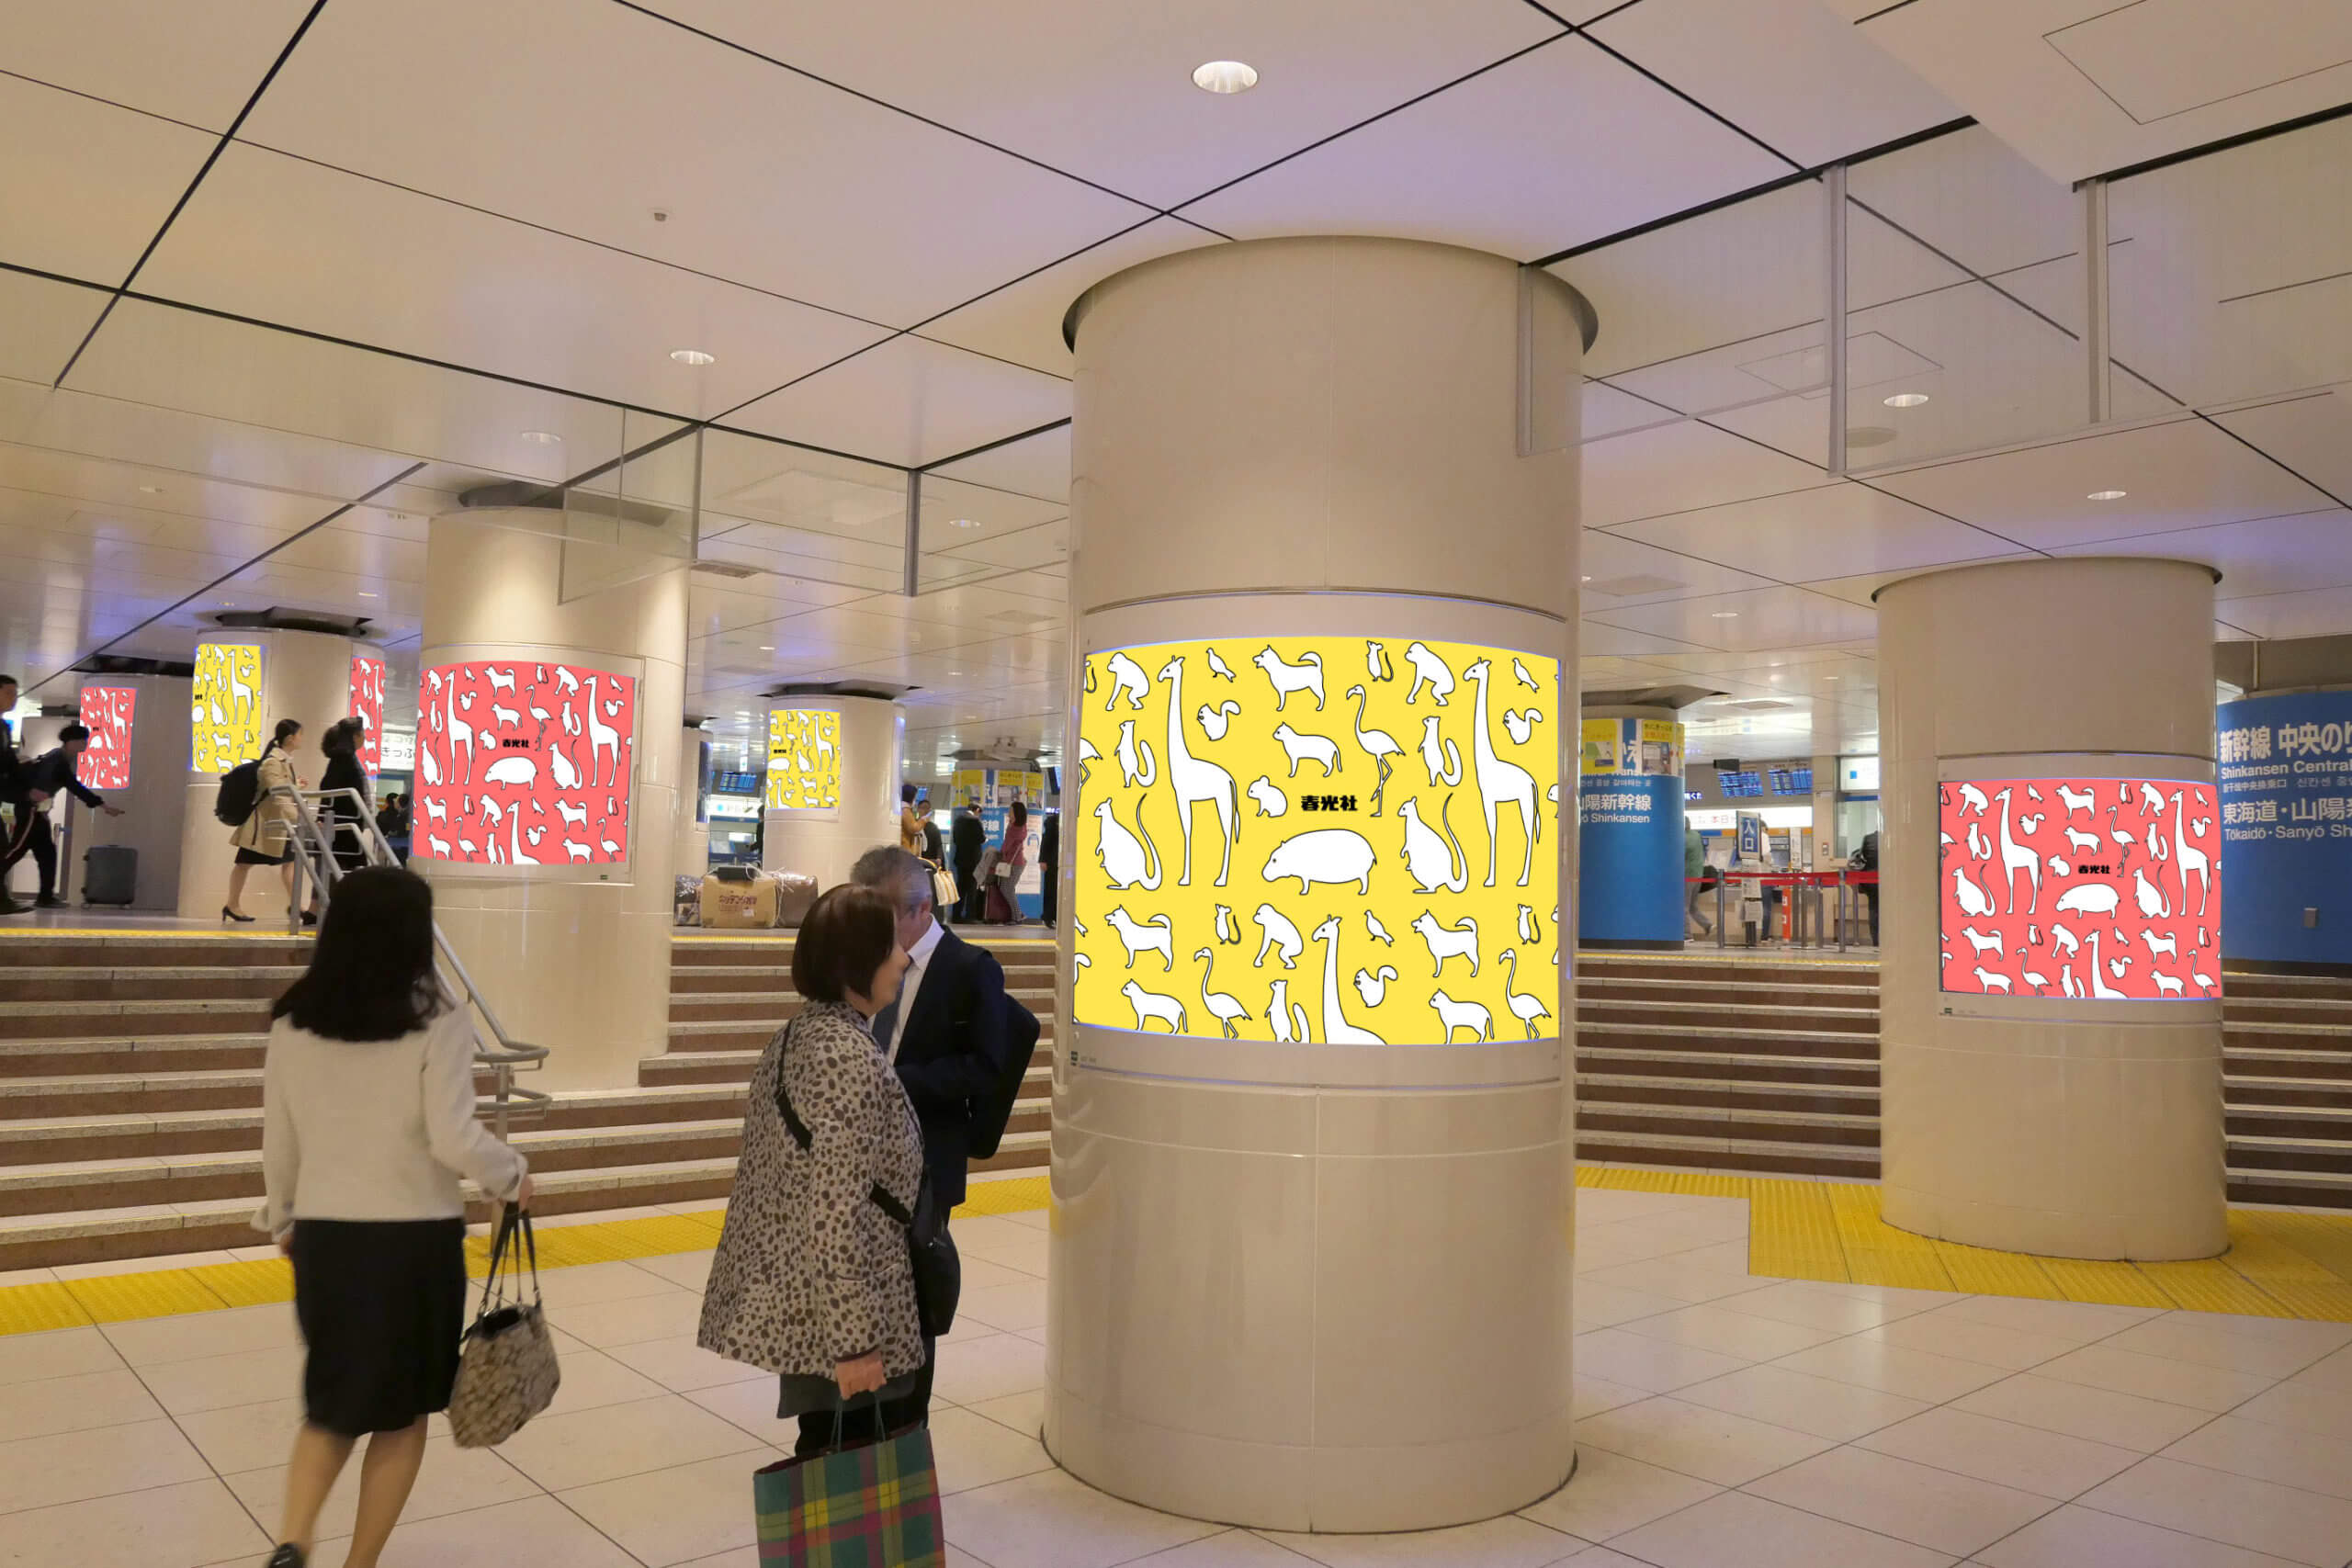 JR東日本東京駅改札内コンコース新幹線乗り換え口に設置されているポスター